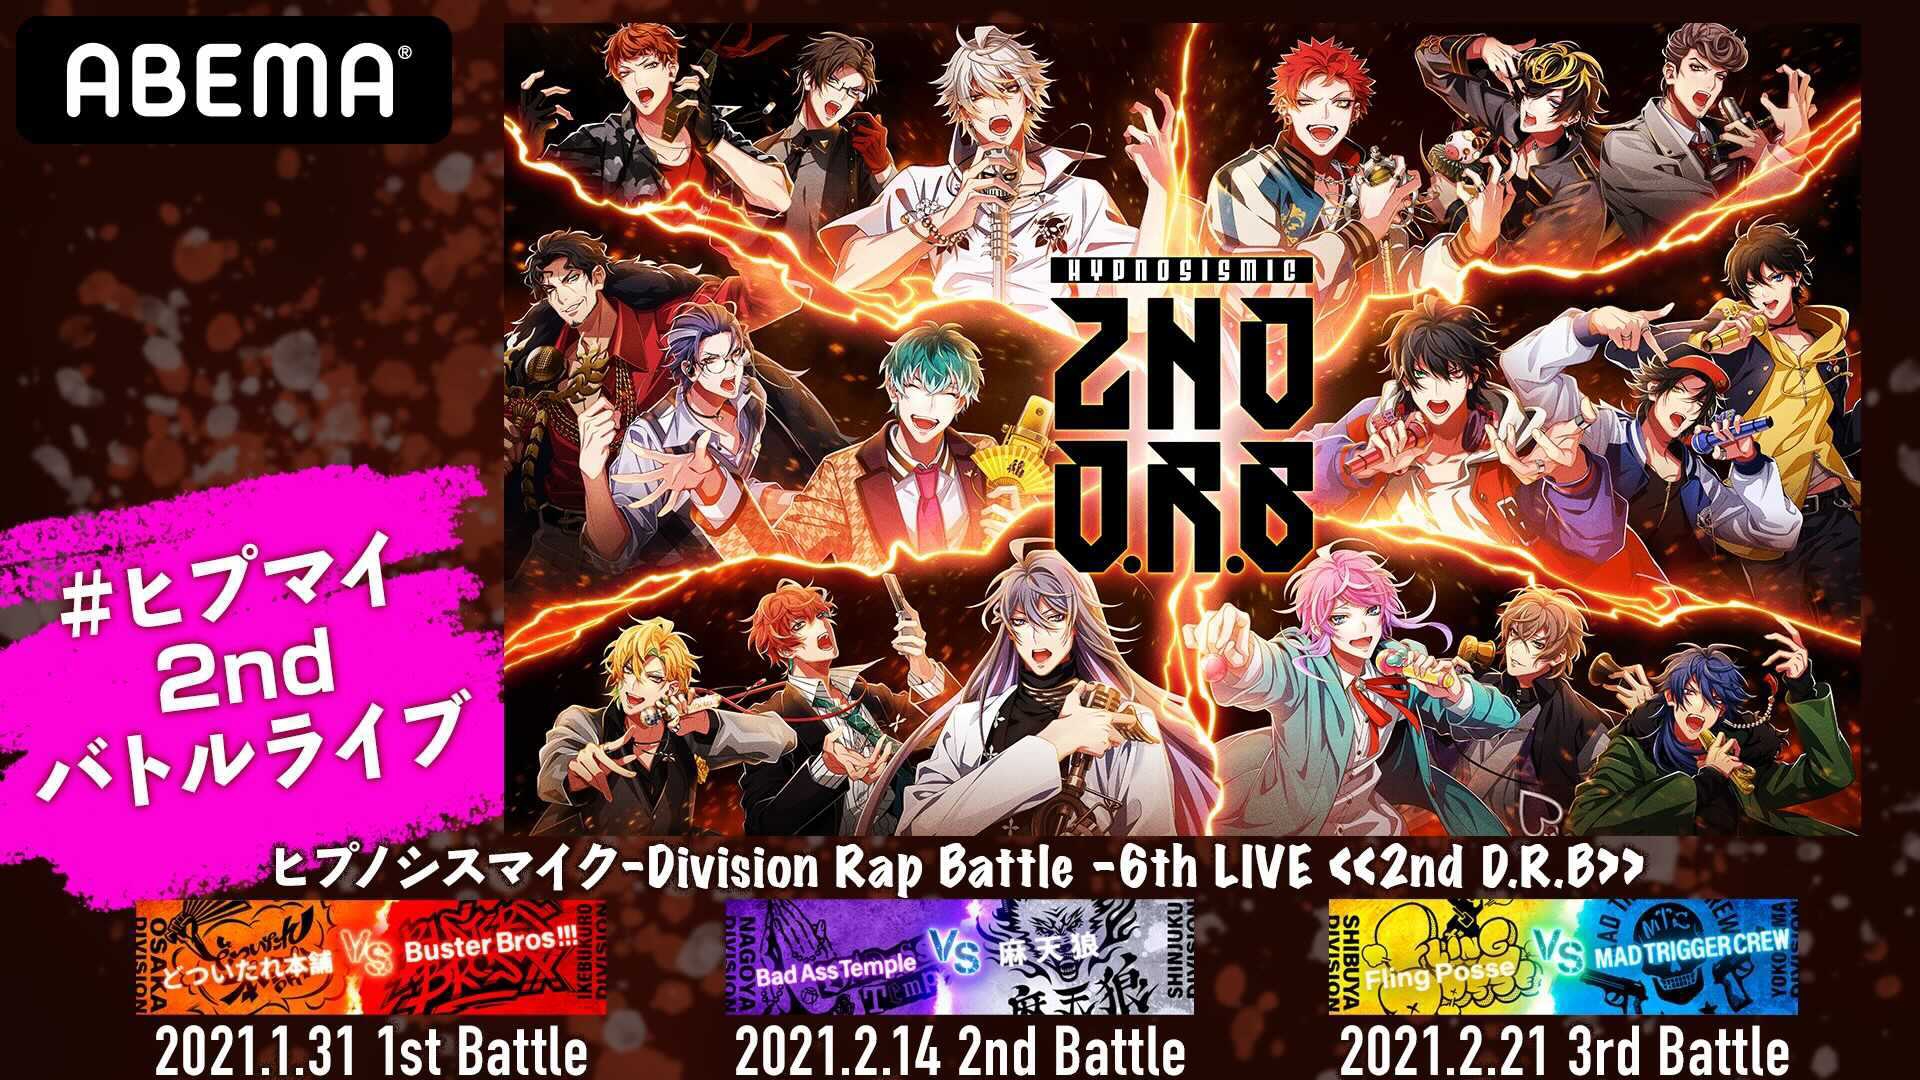 6,300円ヒプノシスマイク-Division Rap Battle-6th LIVE 2…